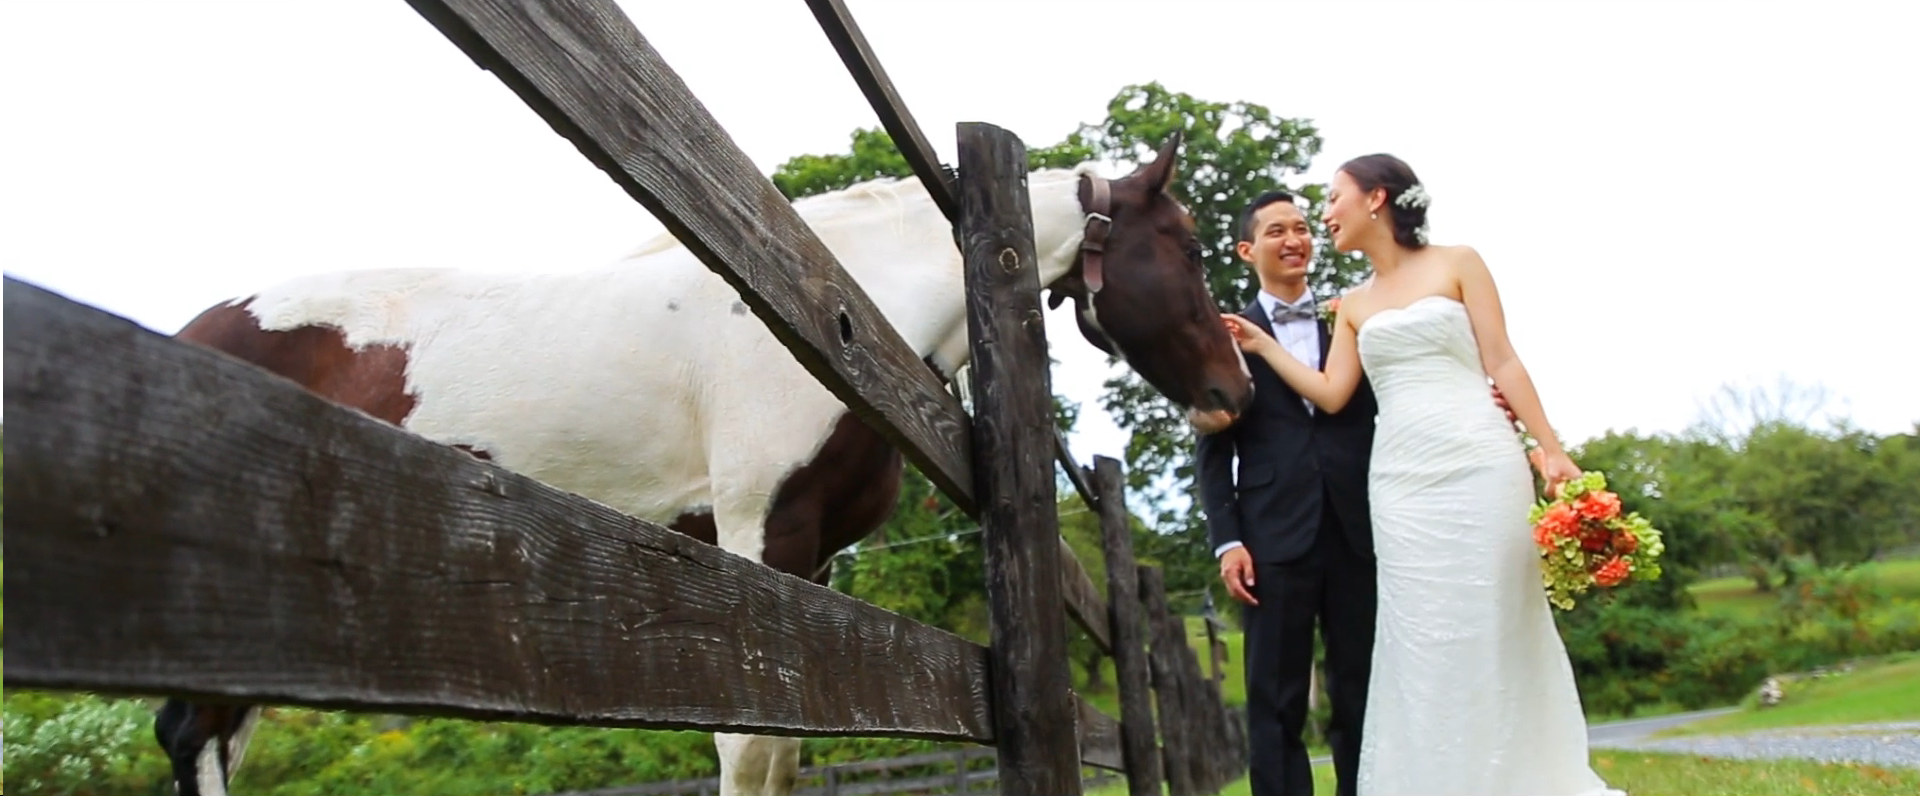 2015 08 11 14.48.06 - A Rustic Tralee Farm Wedding Video